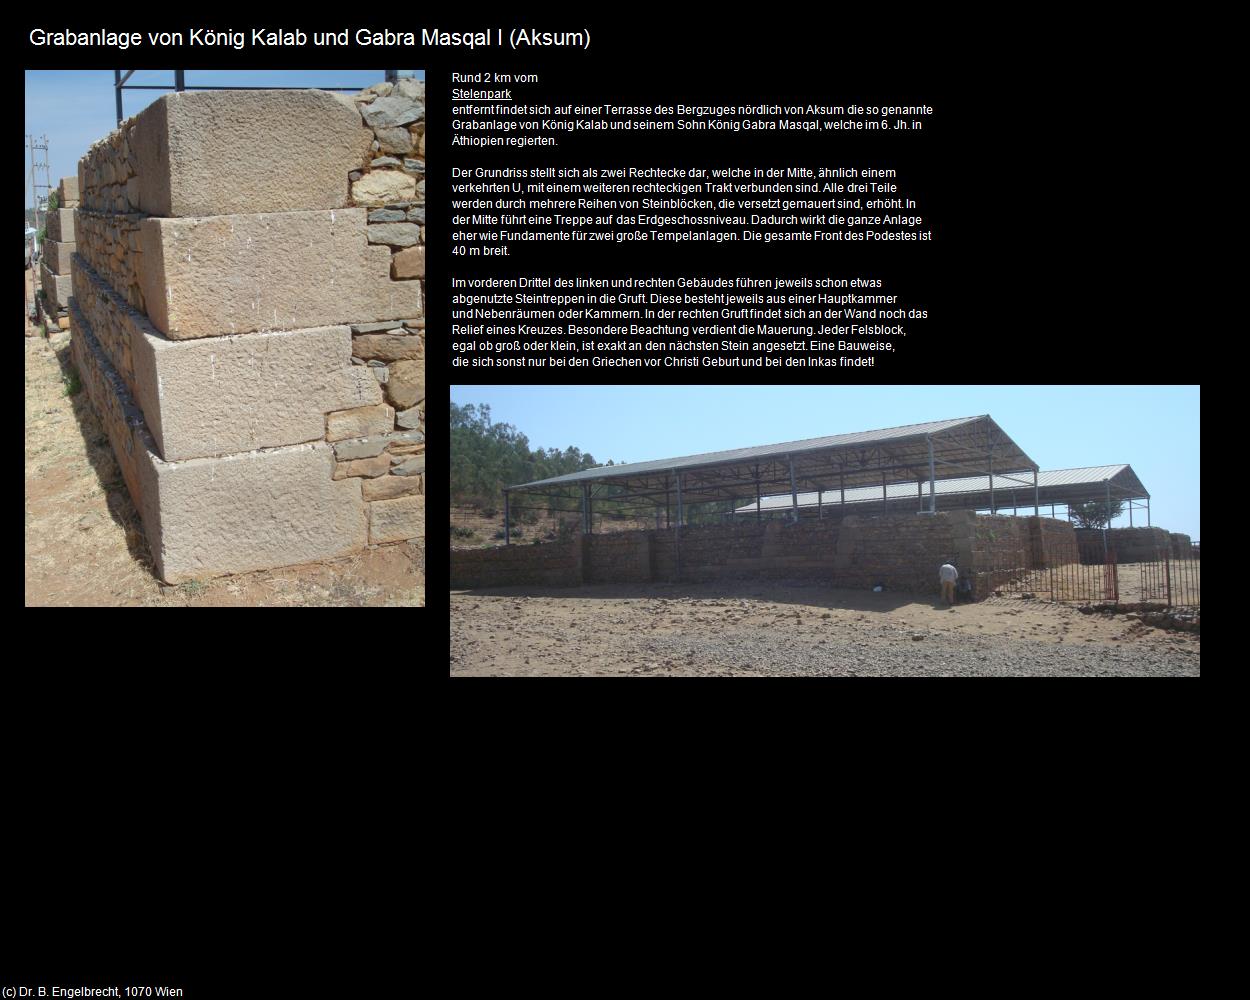 Grabanlage von König Kalab und Gabra Masqal I (Aksum) in Äthiopien(c)B.Engelbrecht